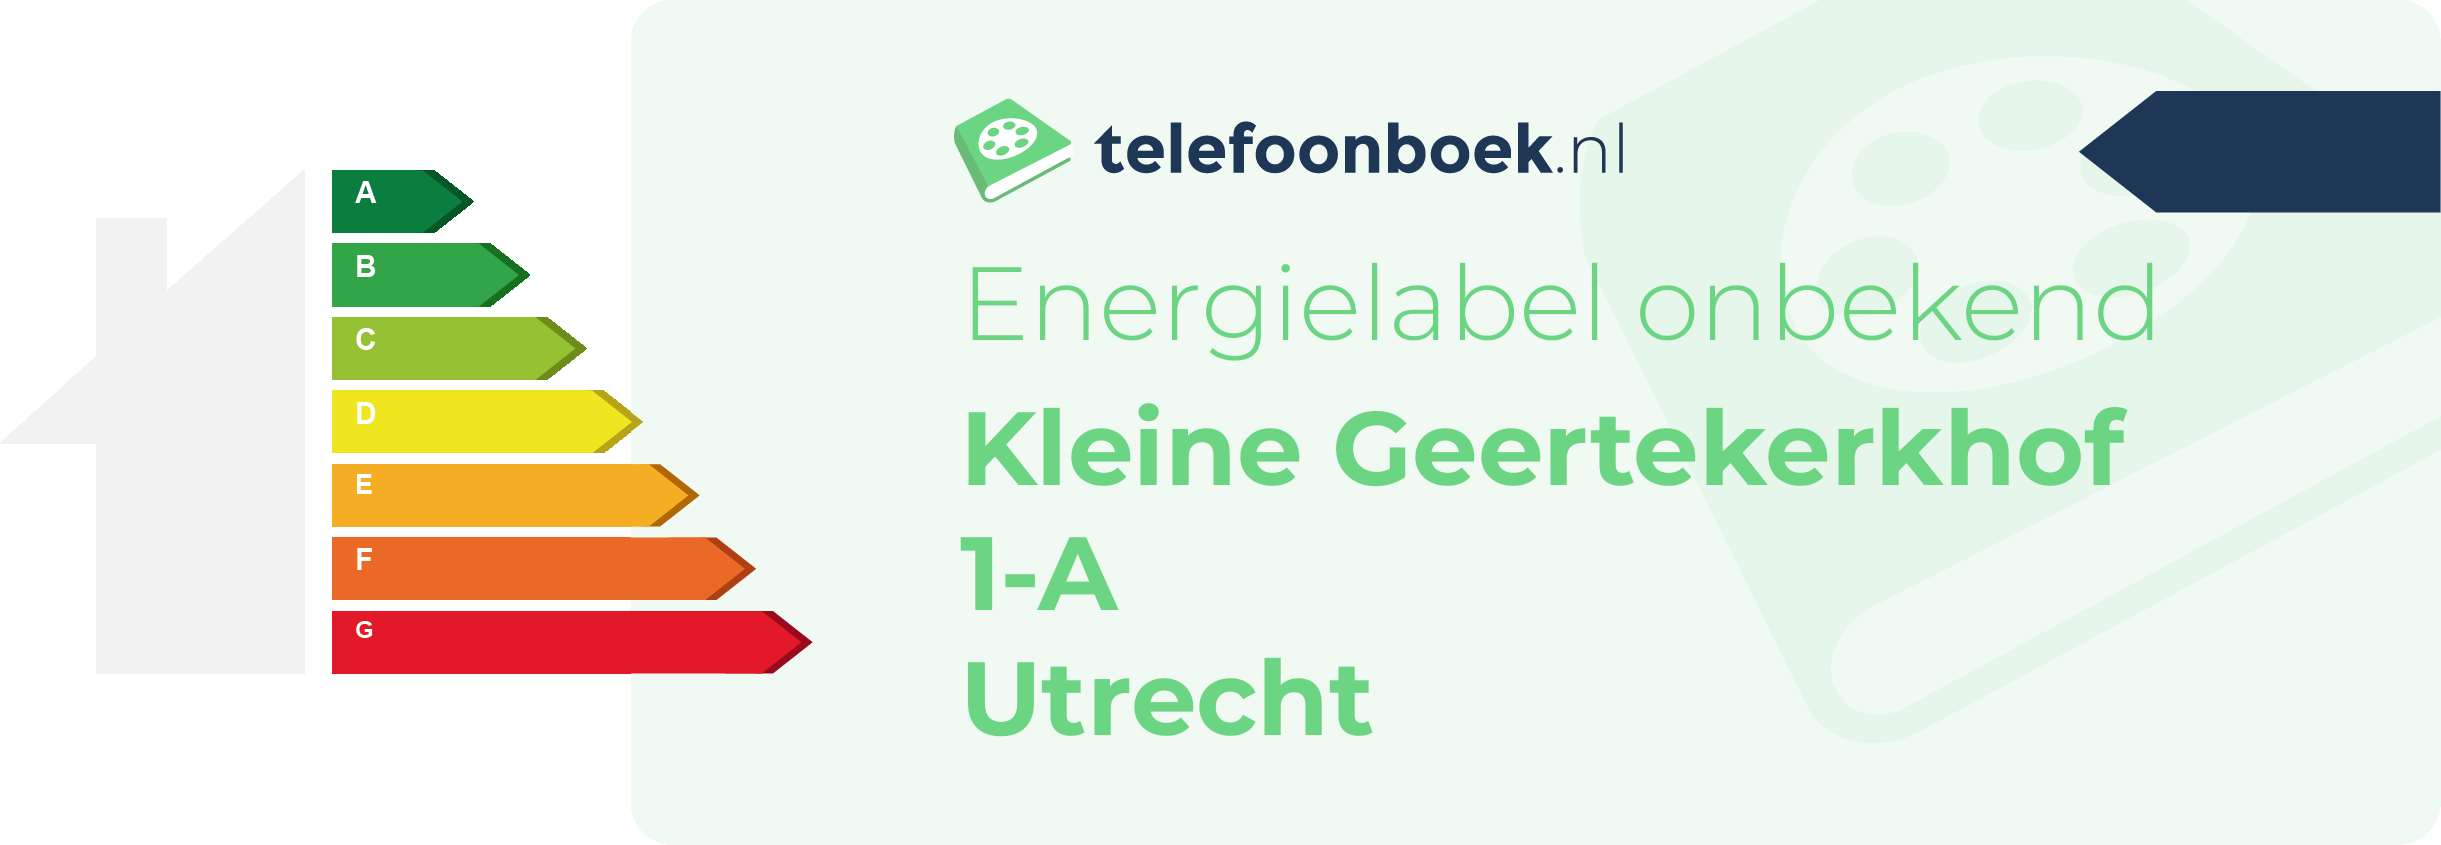 Energielabel Kleine Geertekerkhof 1-A Utrecht